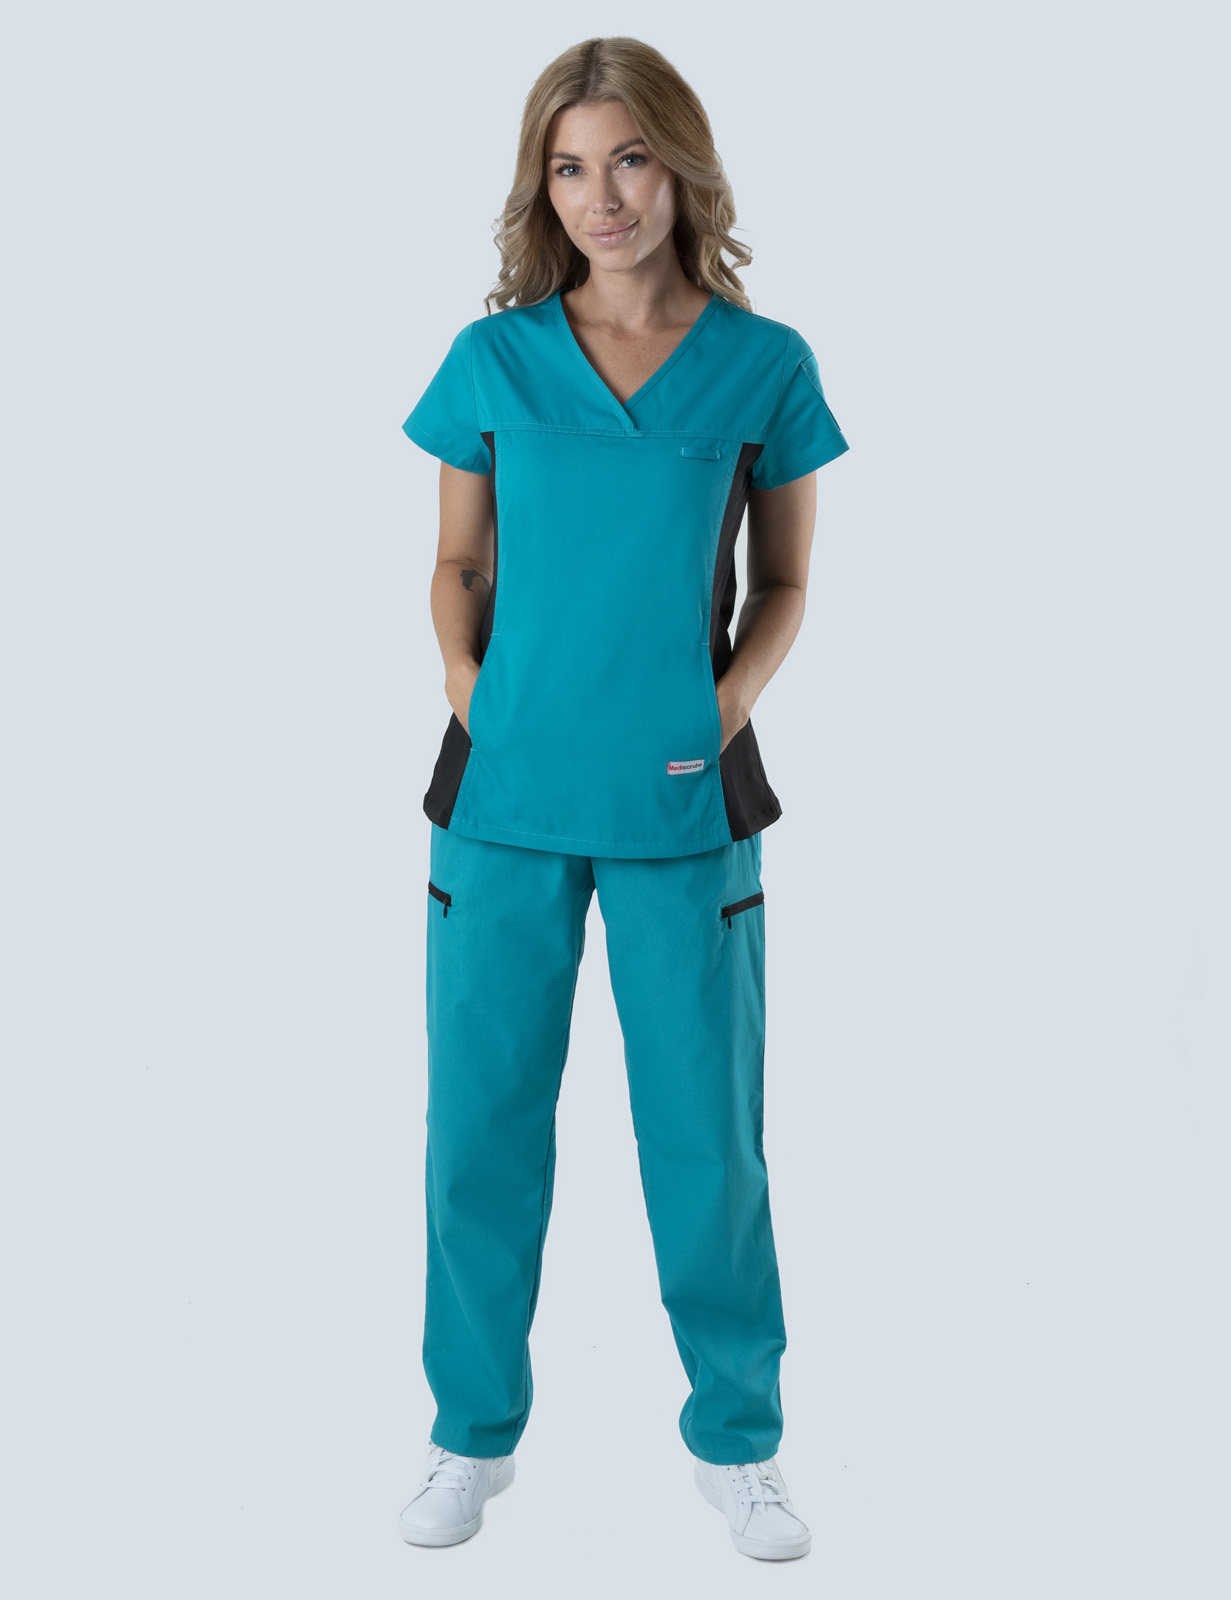 Neonatal Unit Uniform Set Bundle (Women's Fit Spandex Top and Cargo Pants in Teal incl Logo)